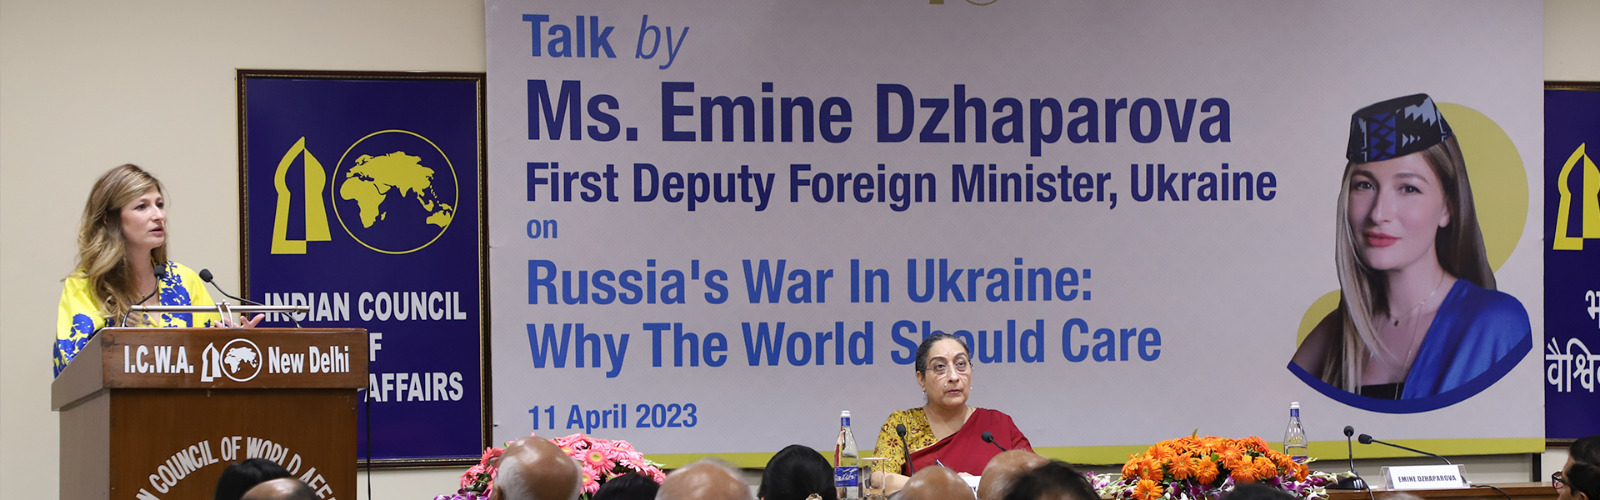 Ms. Emine Dzhaparova, First Deputy Foreign Minister of Ukraine delivering talk on 